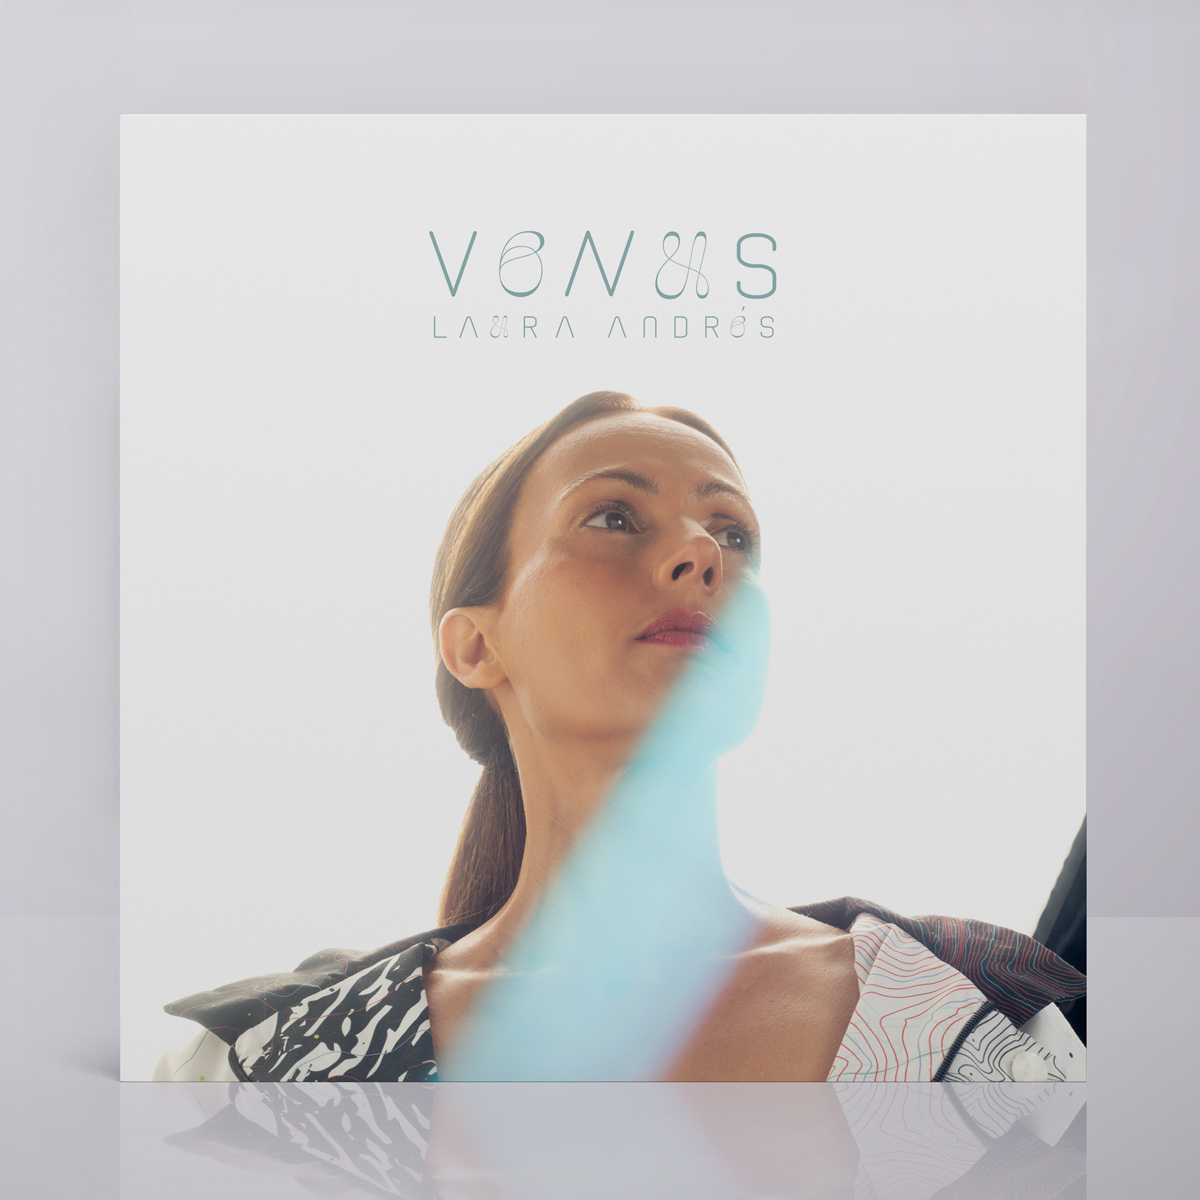 VENUS - CD digital - Laura Andrés